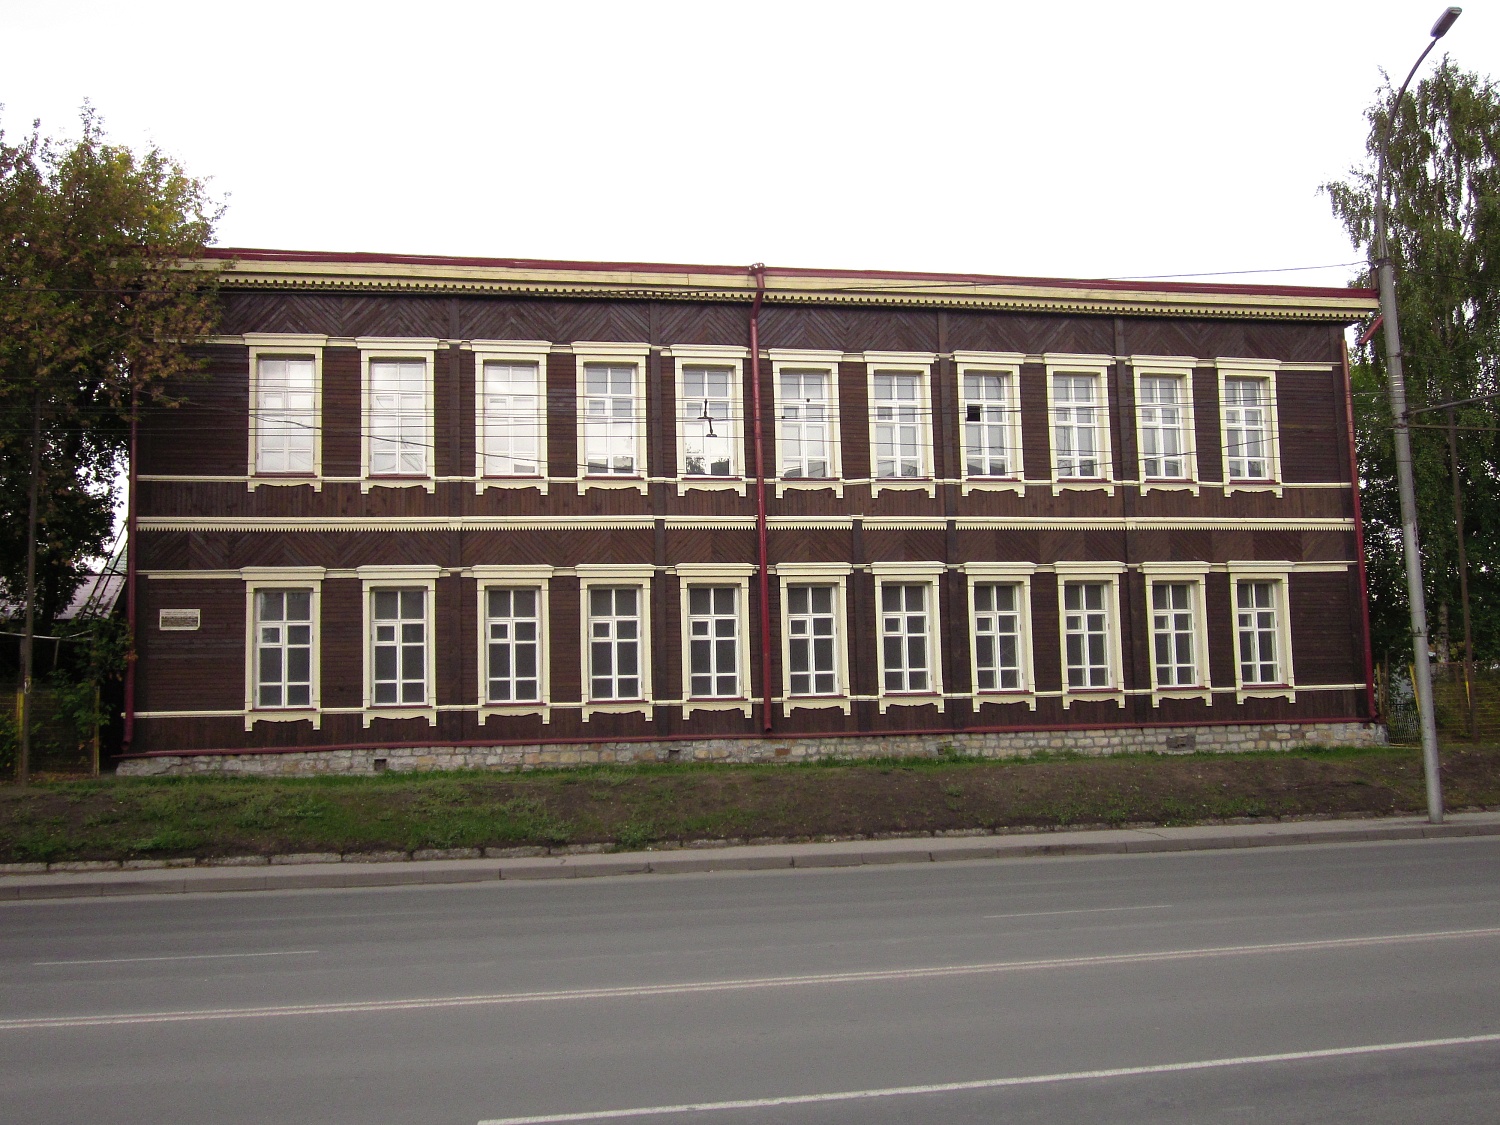 ДОМ, по улице Владимировская 10, в котором с 1905 по 1907 годы находилась воскресная школа рабочих.